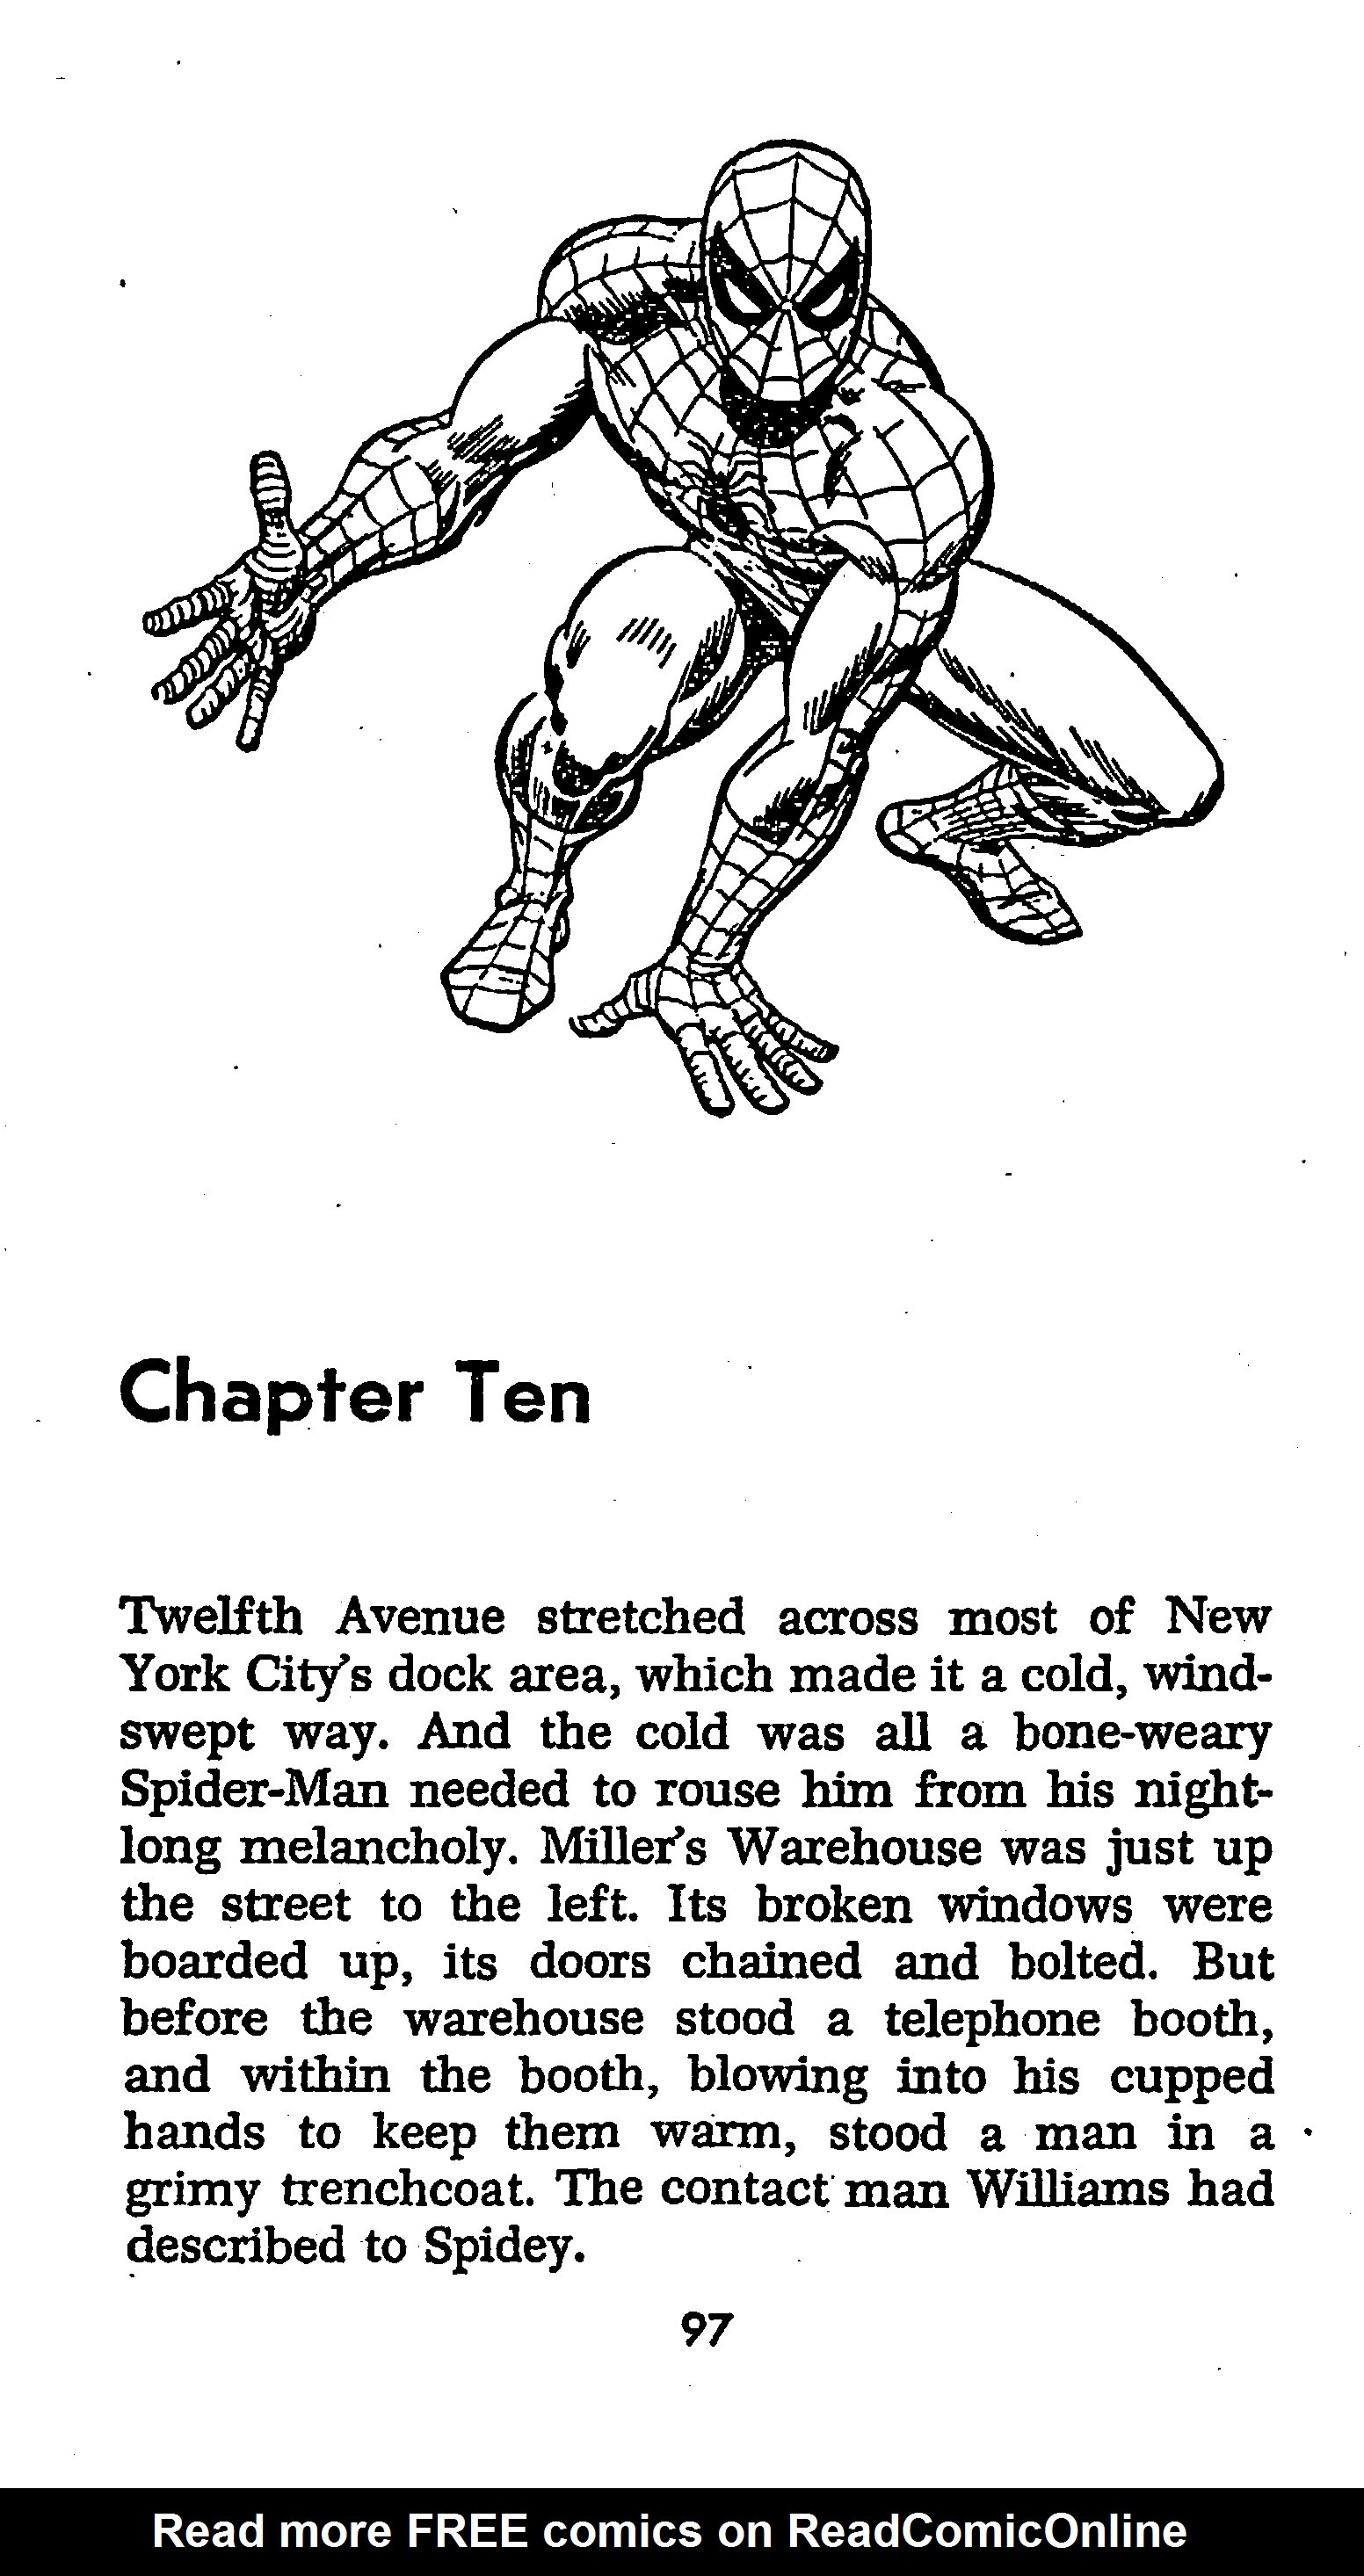 Read online The Amazing Spider-Man: Mayhem in Manhattan comic -  Issue # TPB (Part 1) - 98